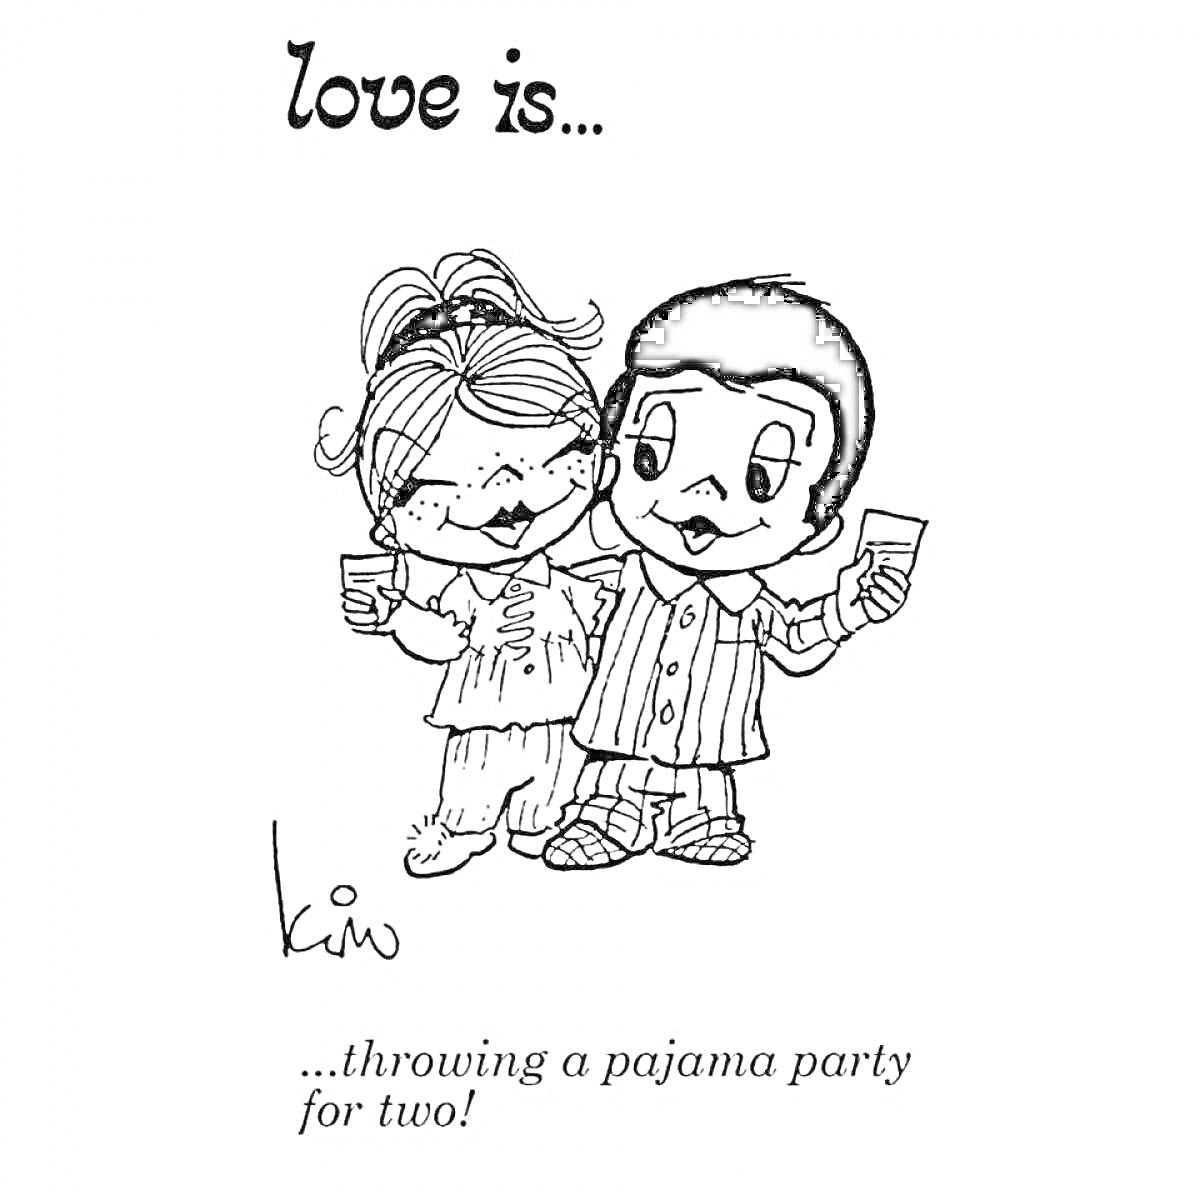 Раскраска любовь это... организовать пижамную вечеринку на двоих! (два персонажа в пижамах с напитками в руках)